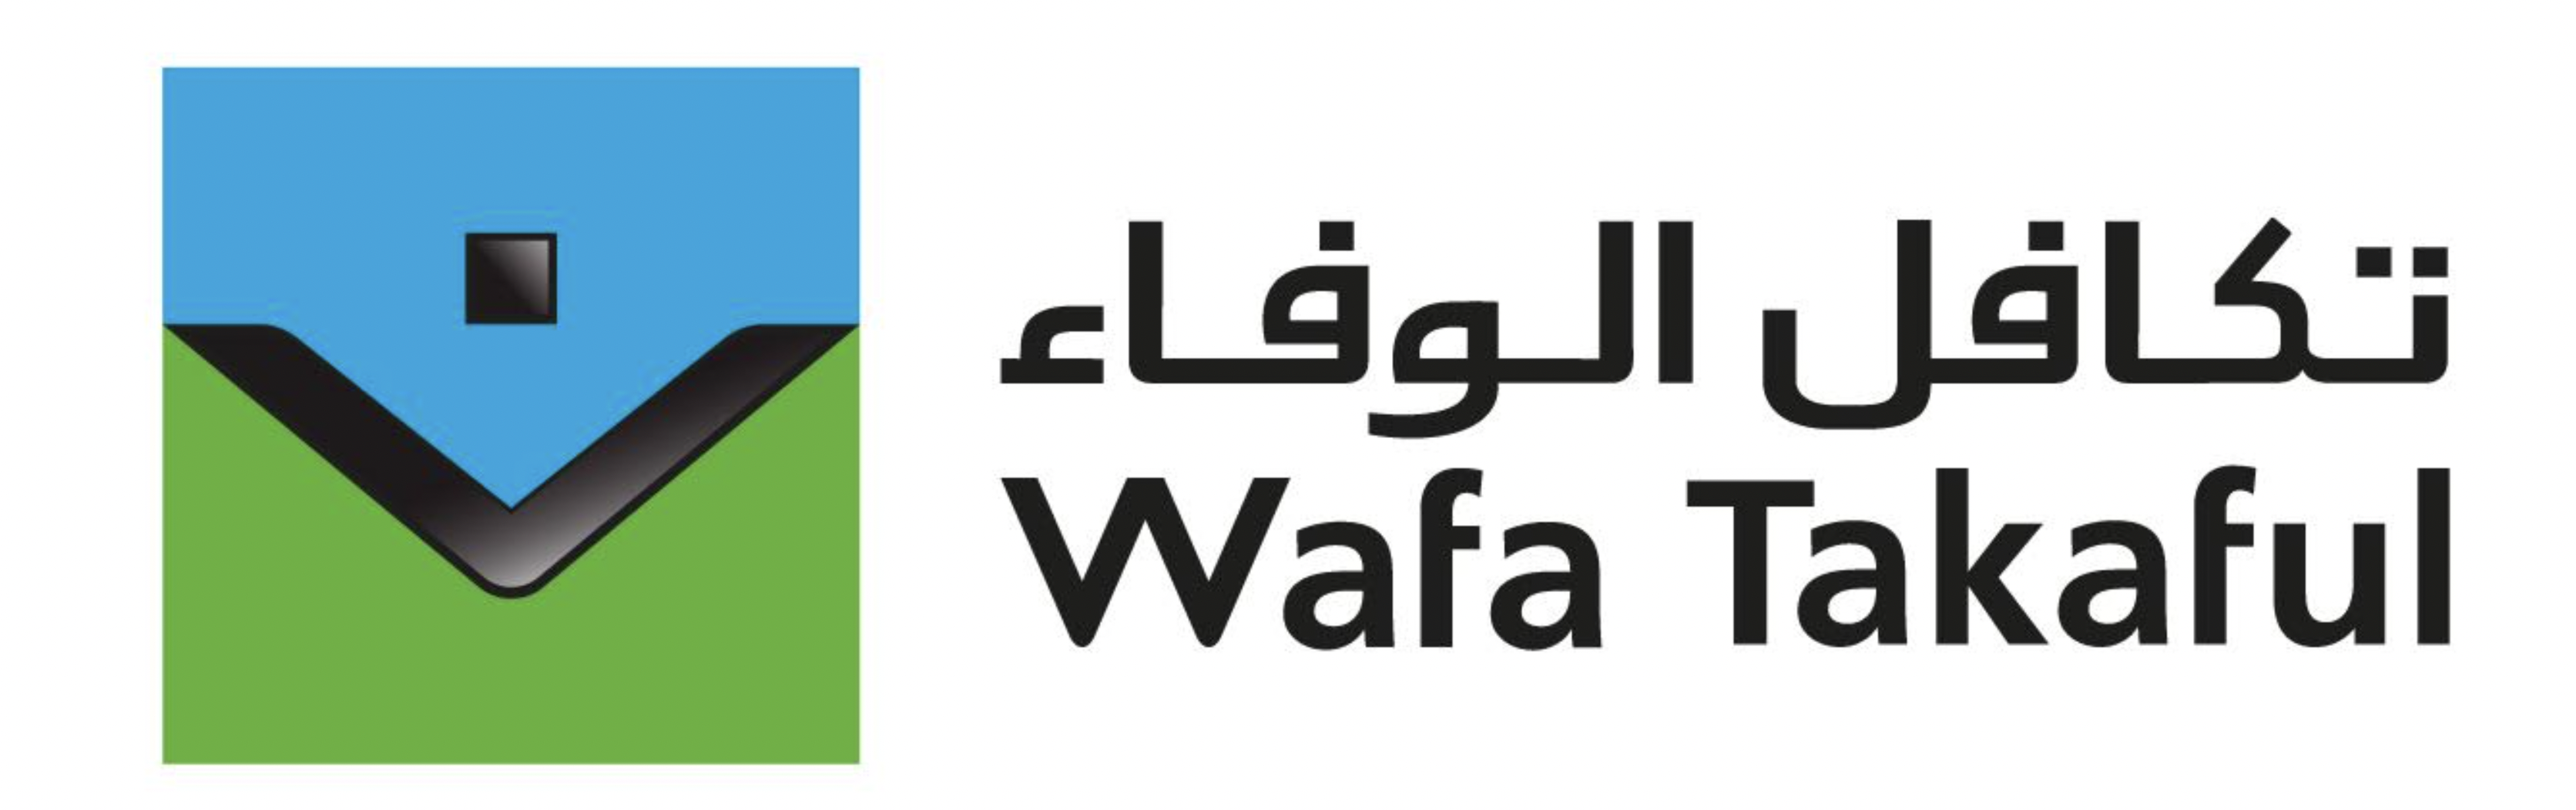 Les produits de Wafa Takaful validés par le Conseil Supérieur des Oulémas et l'ACAPS